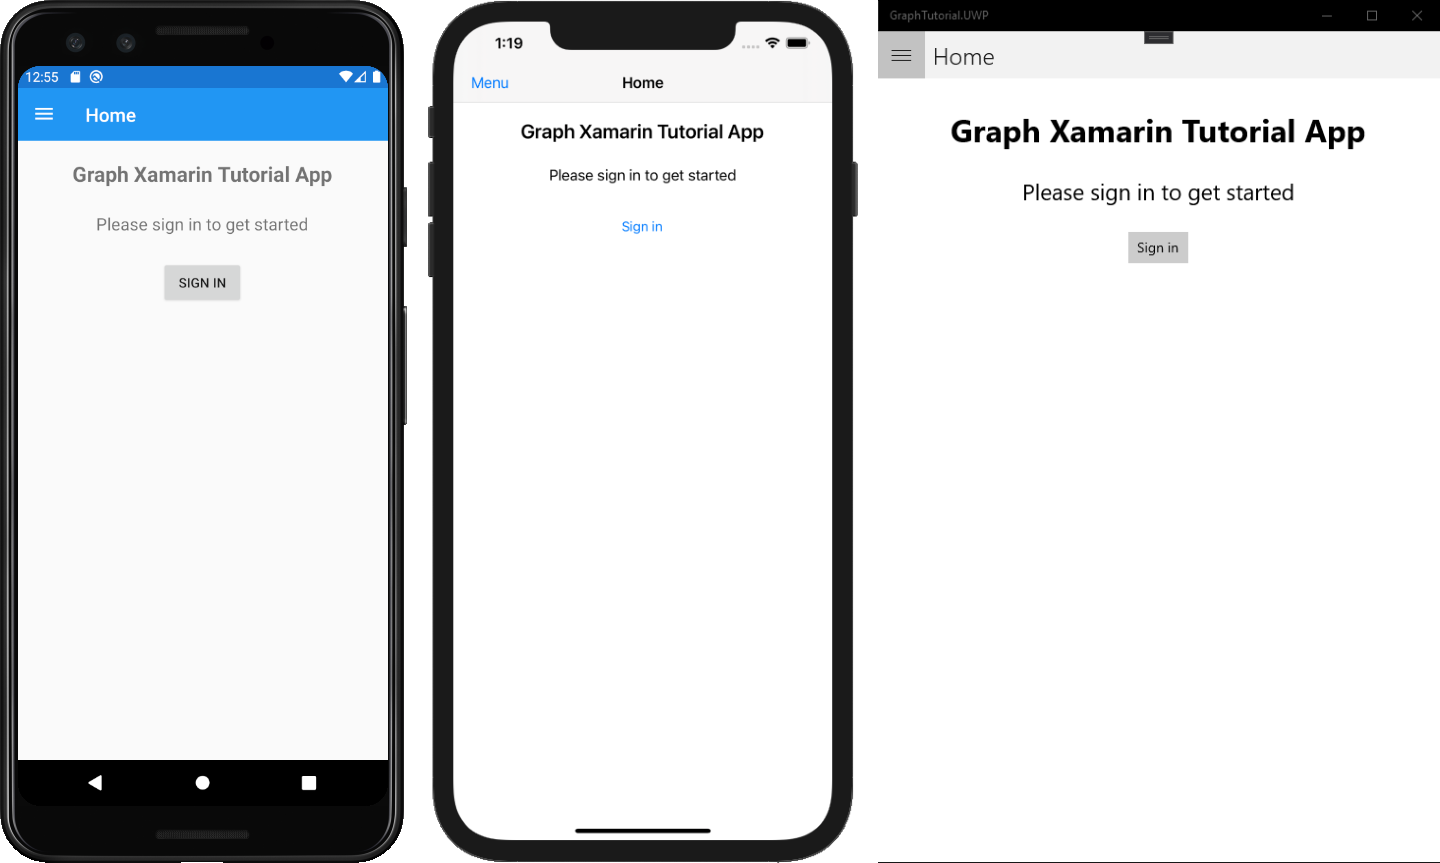 Скриншоты версий приложения для Android, iOS и UWP